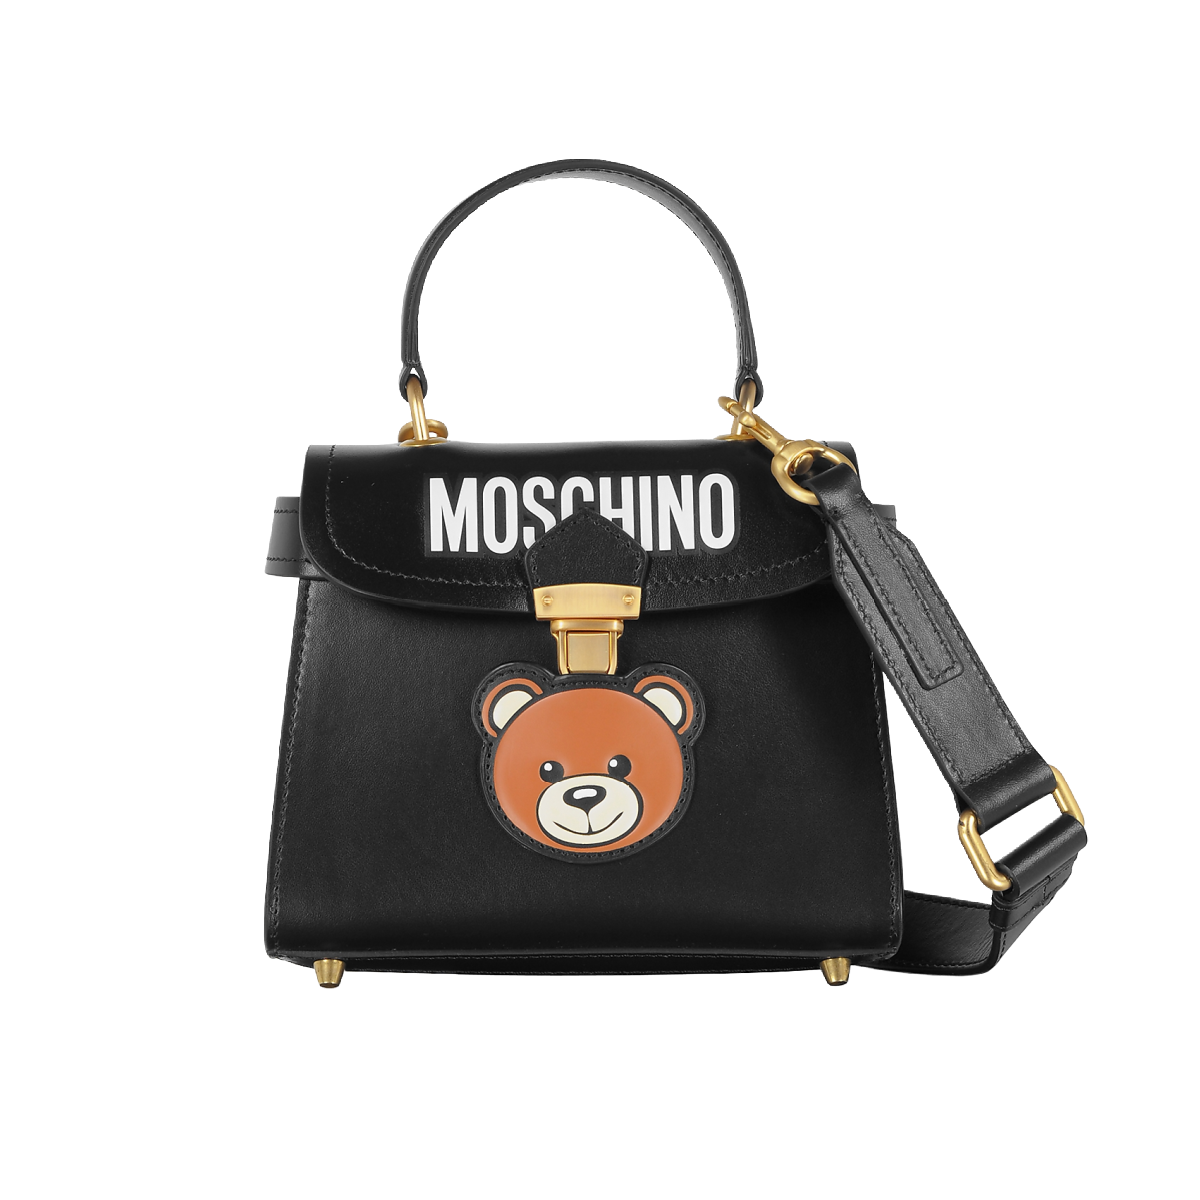 moshino handbag